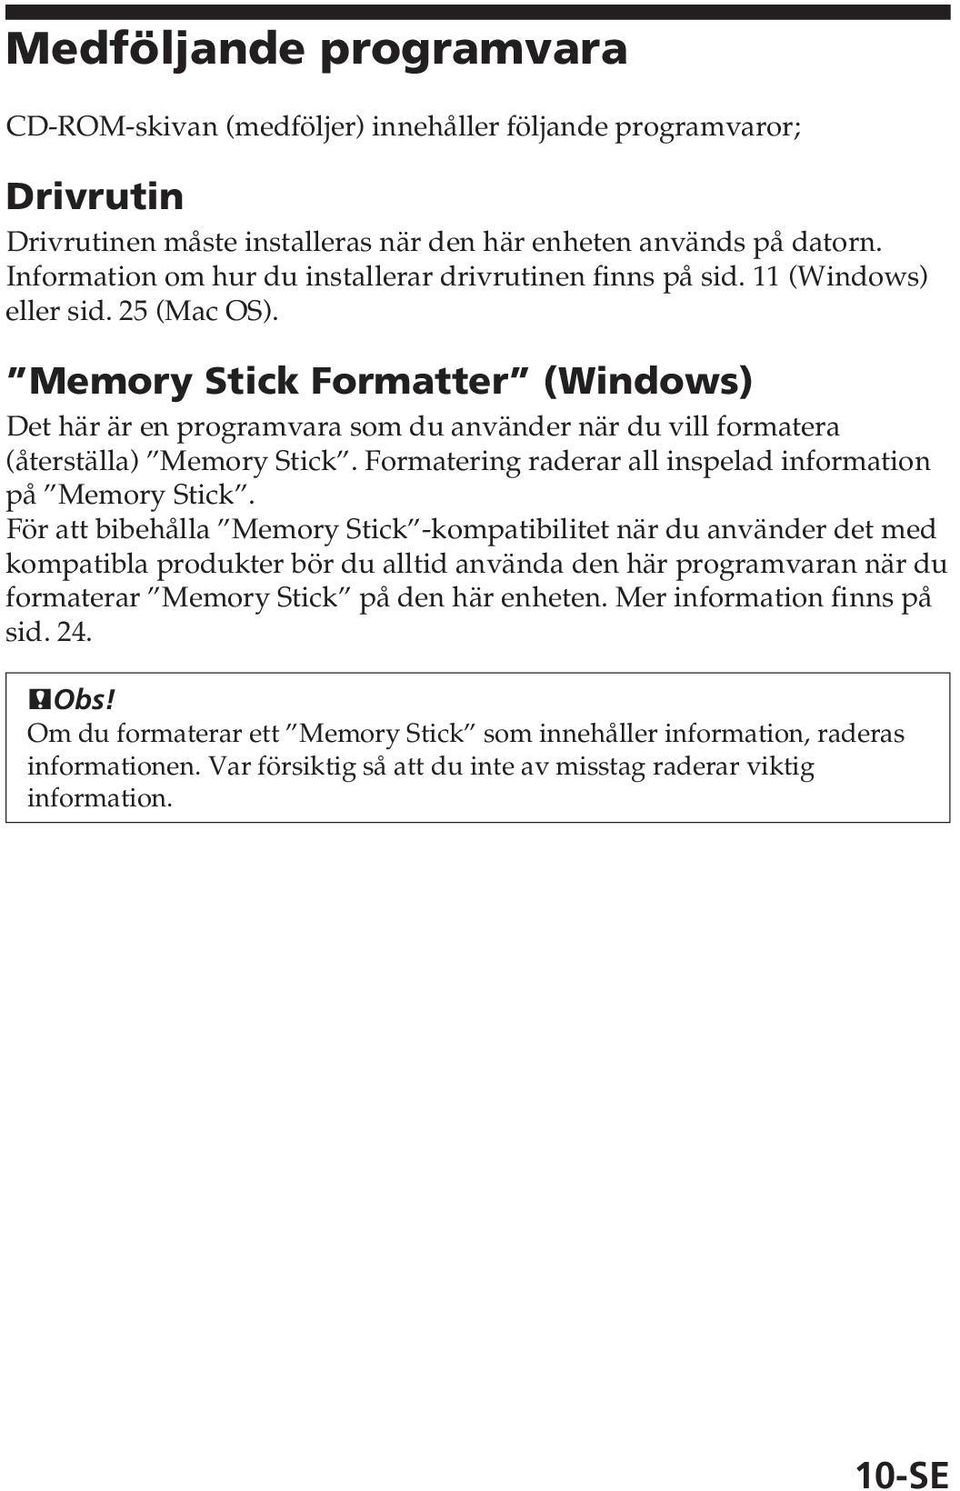 Memory Stick Formatter (Windows) Det här är en programvara som du använder när du vill formatera (återställa) Memory Stick. Formatering raderar all inspelad information på Memory Stick.